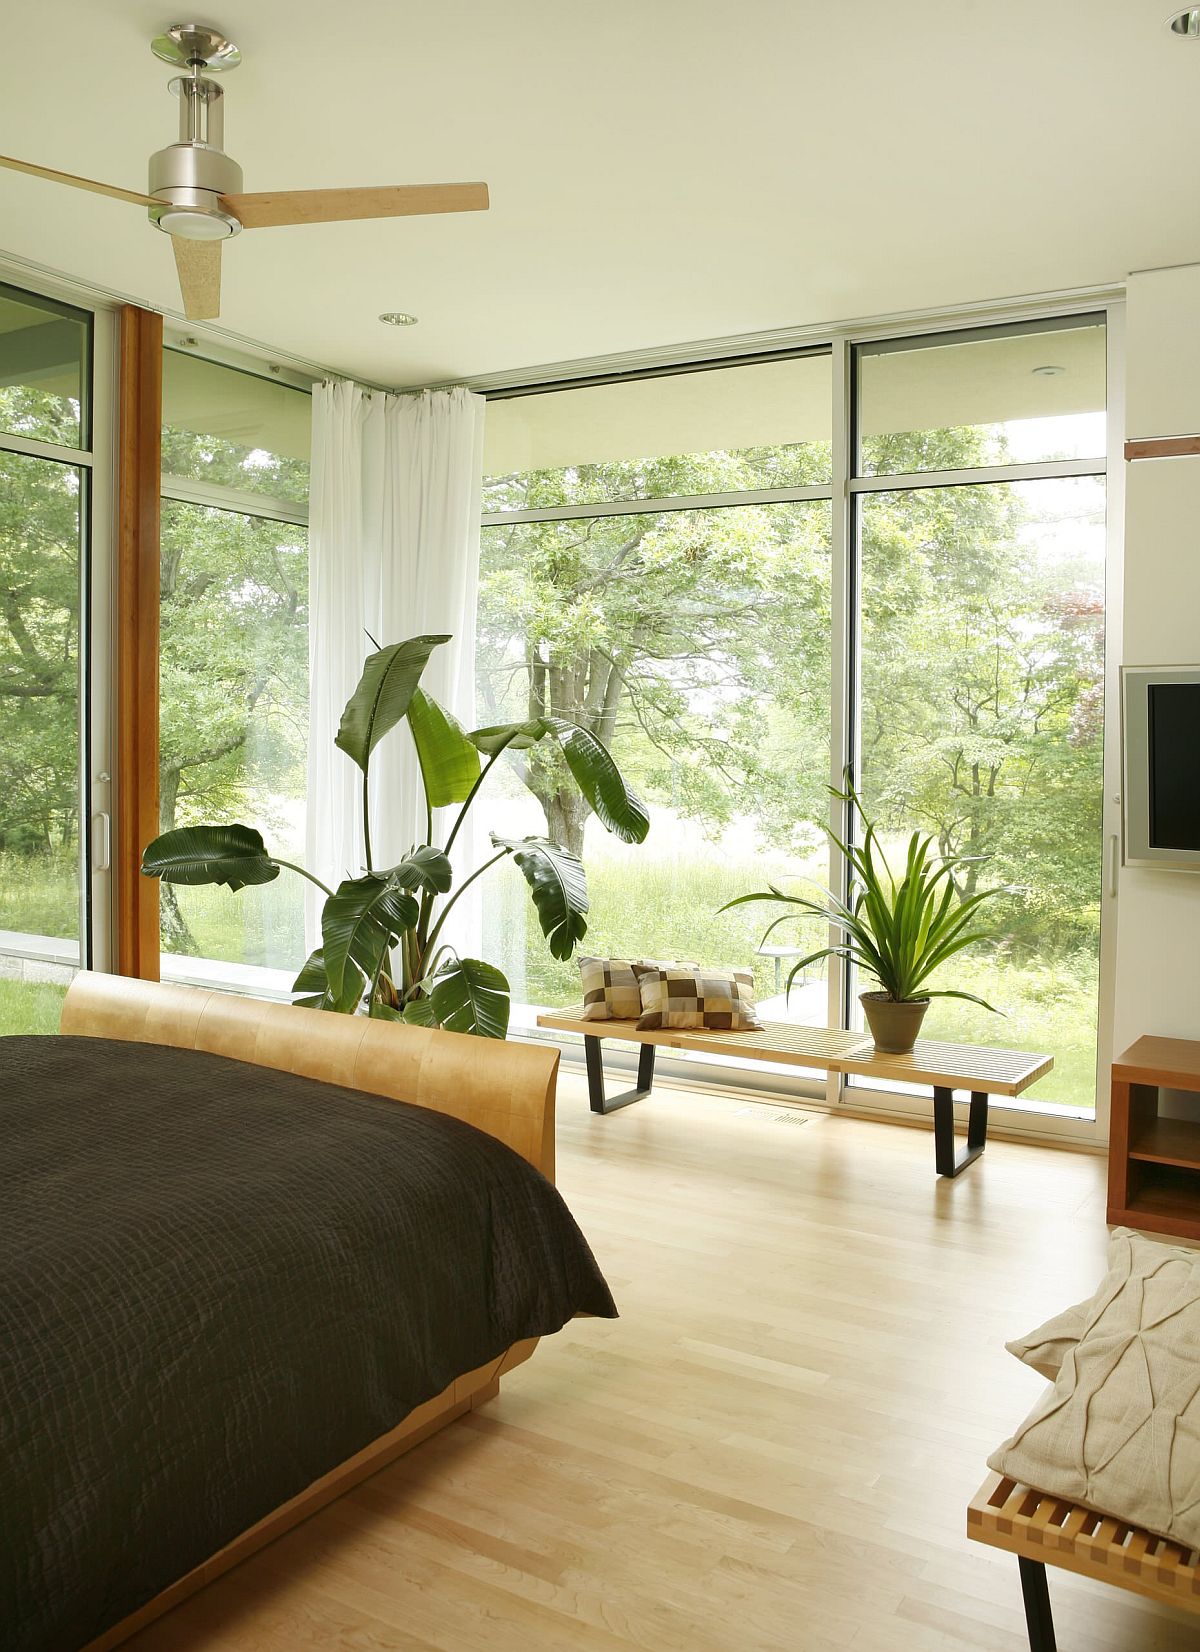 Phòng ngủ với tường kính trong suốt nhìn ra khung cảnh mướt mát tươi xanh đến đáng “ghen tỵ” bên ngoài.